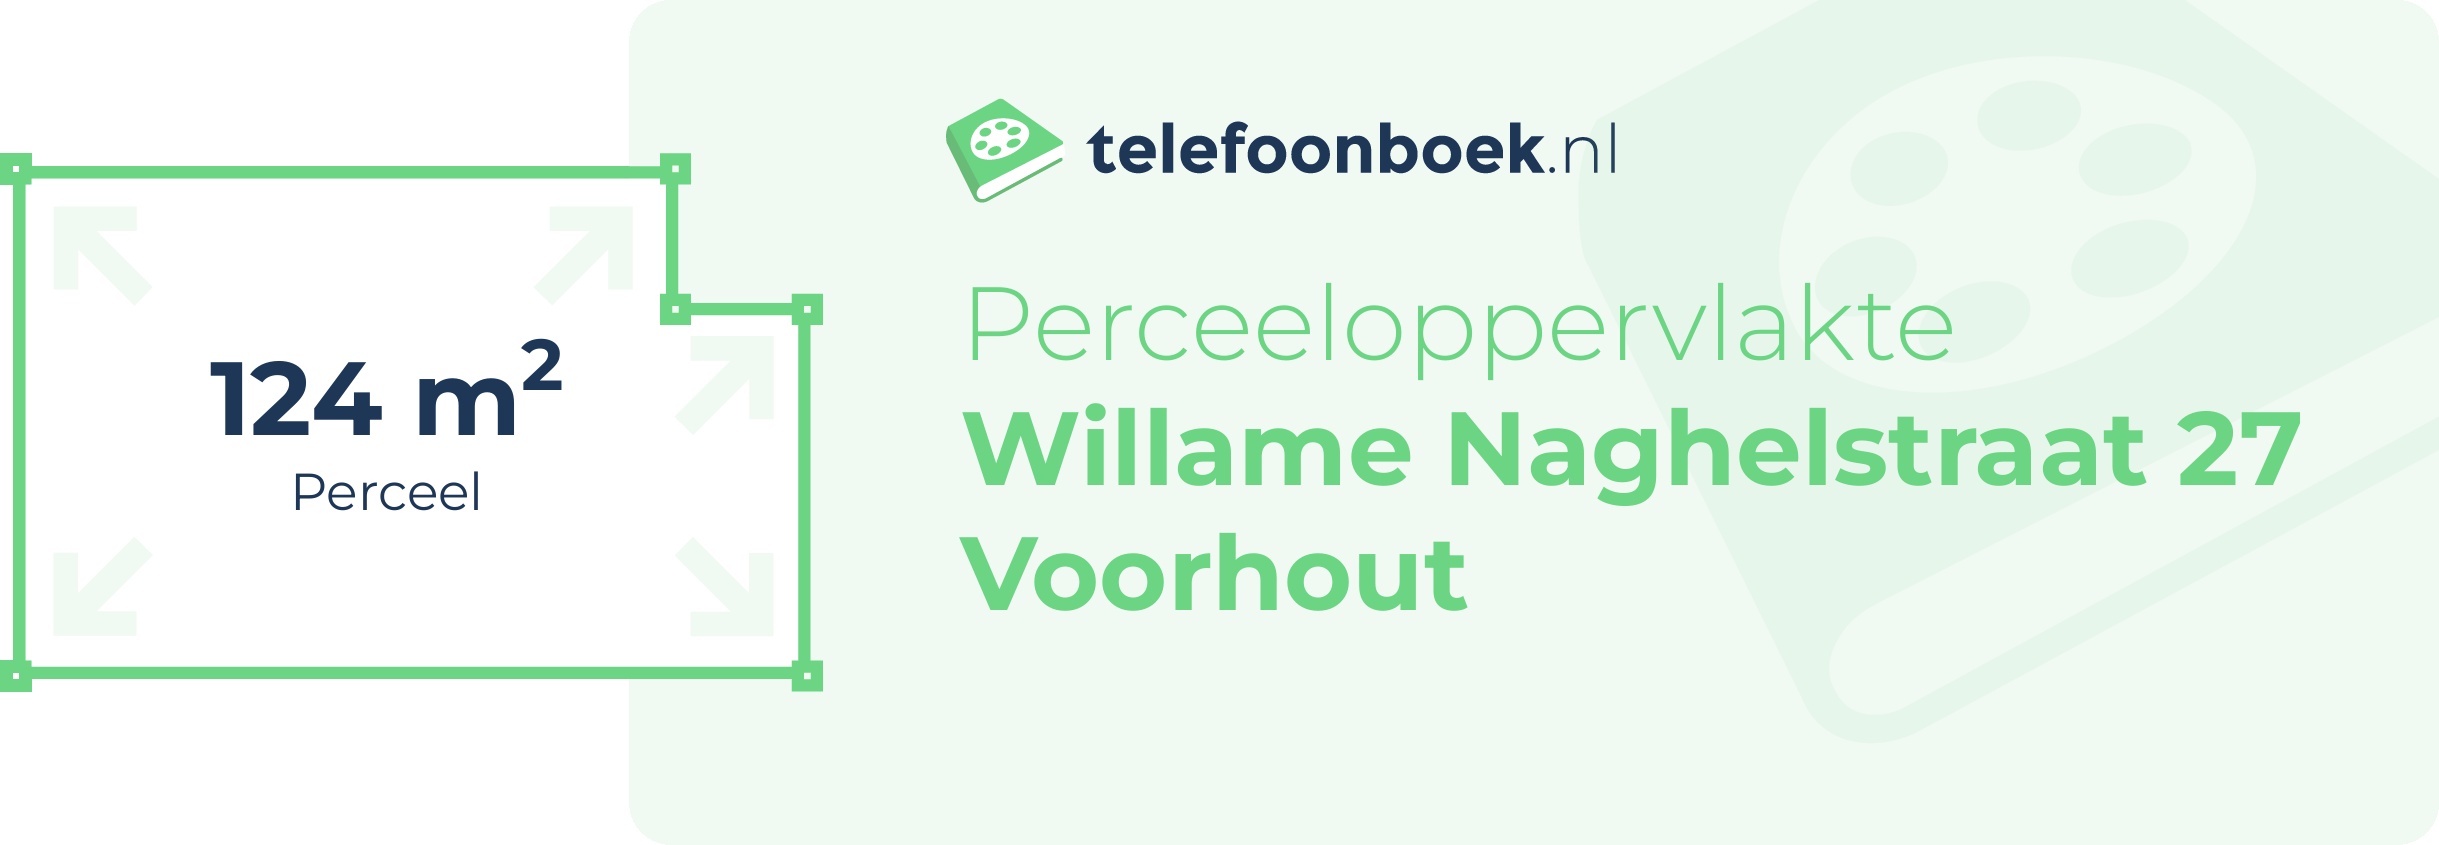 Perceeloppervlakte Willame Naghelstraat 27 Voorhout